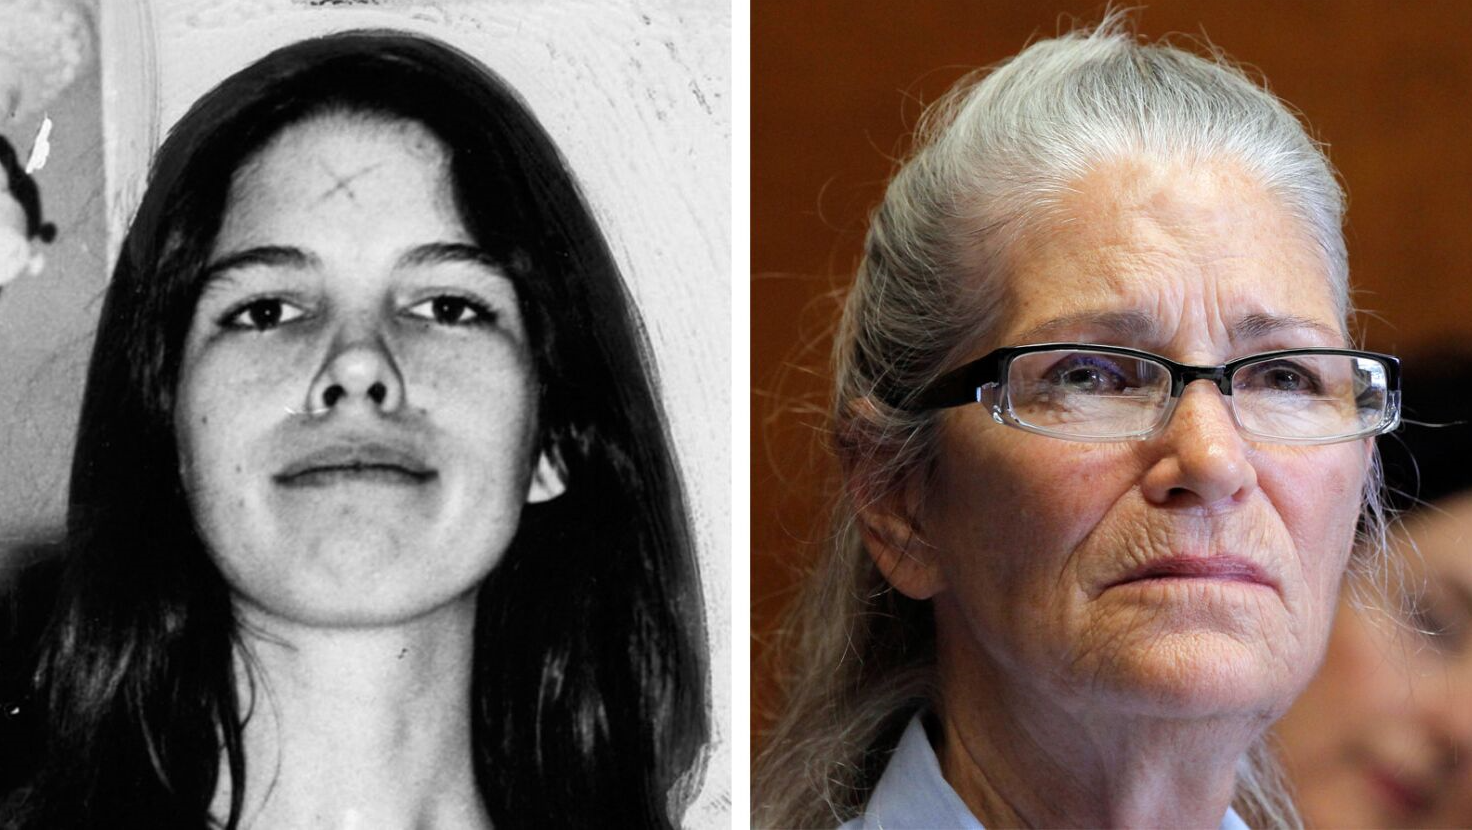 Manson tarikatının eski üyesi Leslie Van Houten, 53 yıl sonra şartlı tahliye edildi